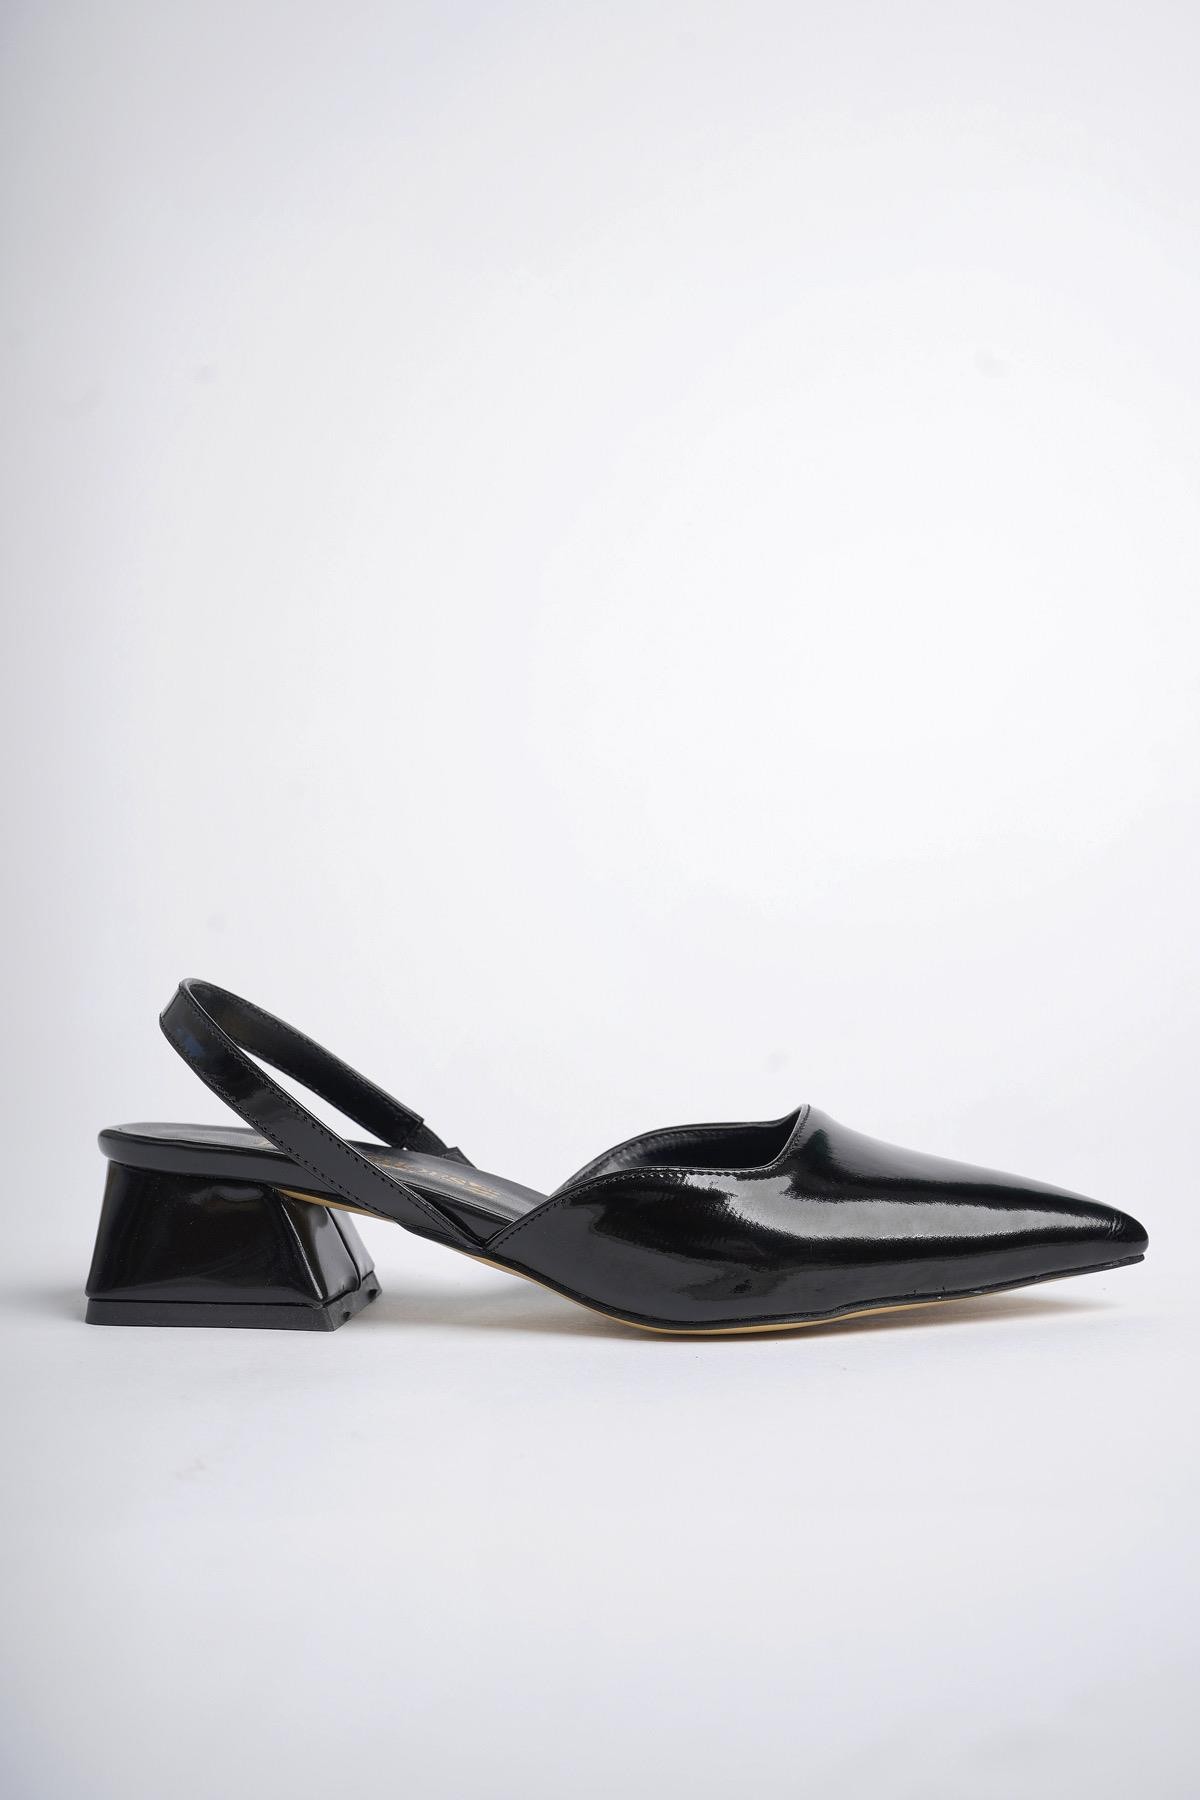 Muggo MİRANDA Garantili Arkası Açık Bilek Detaylı Kısa Topuklu Kadın Ayakkabı